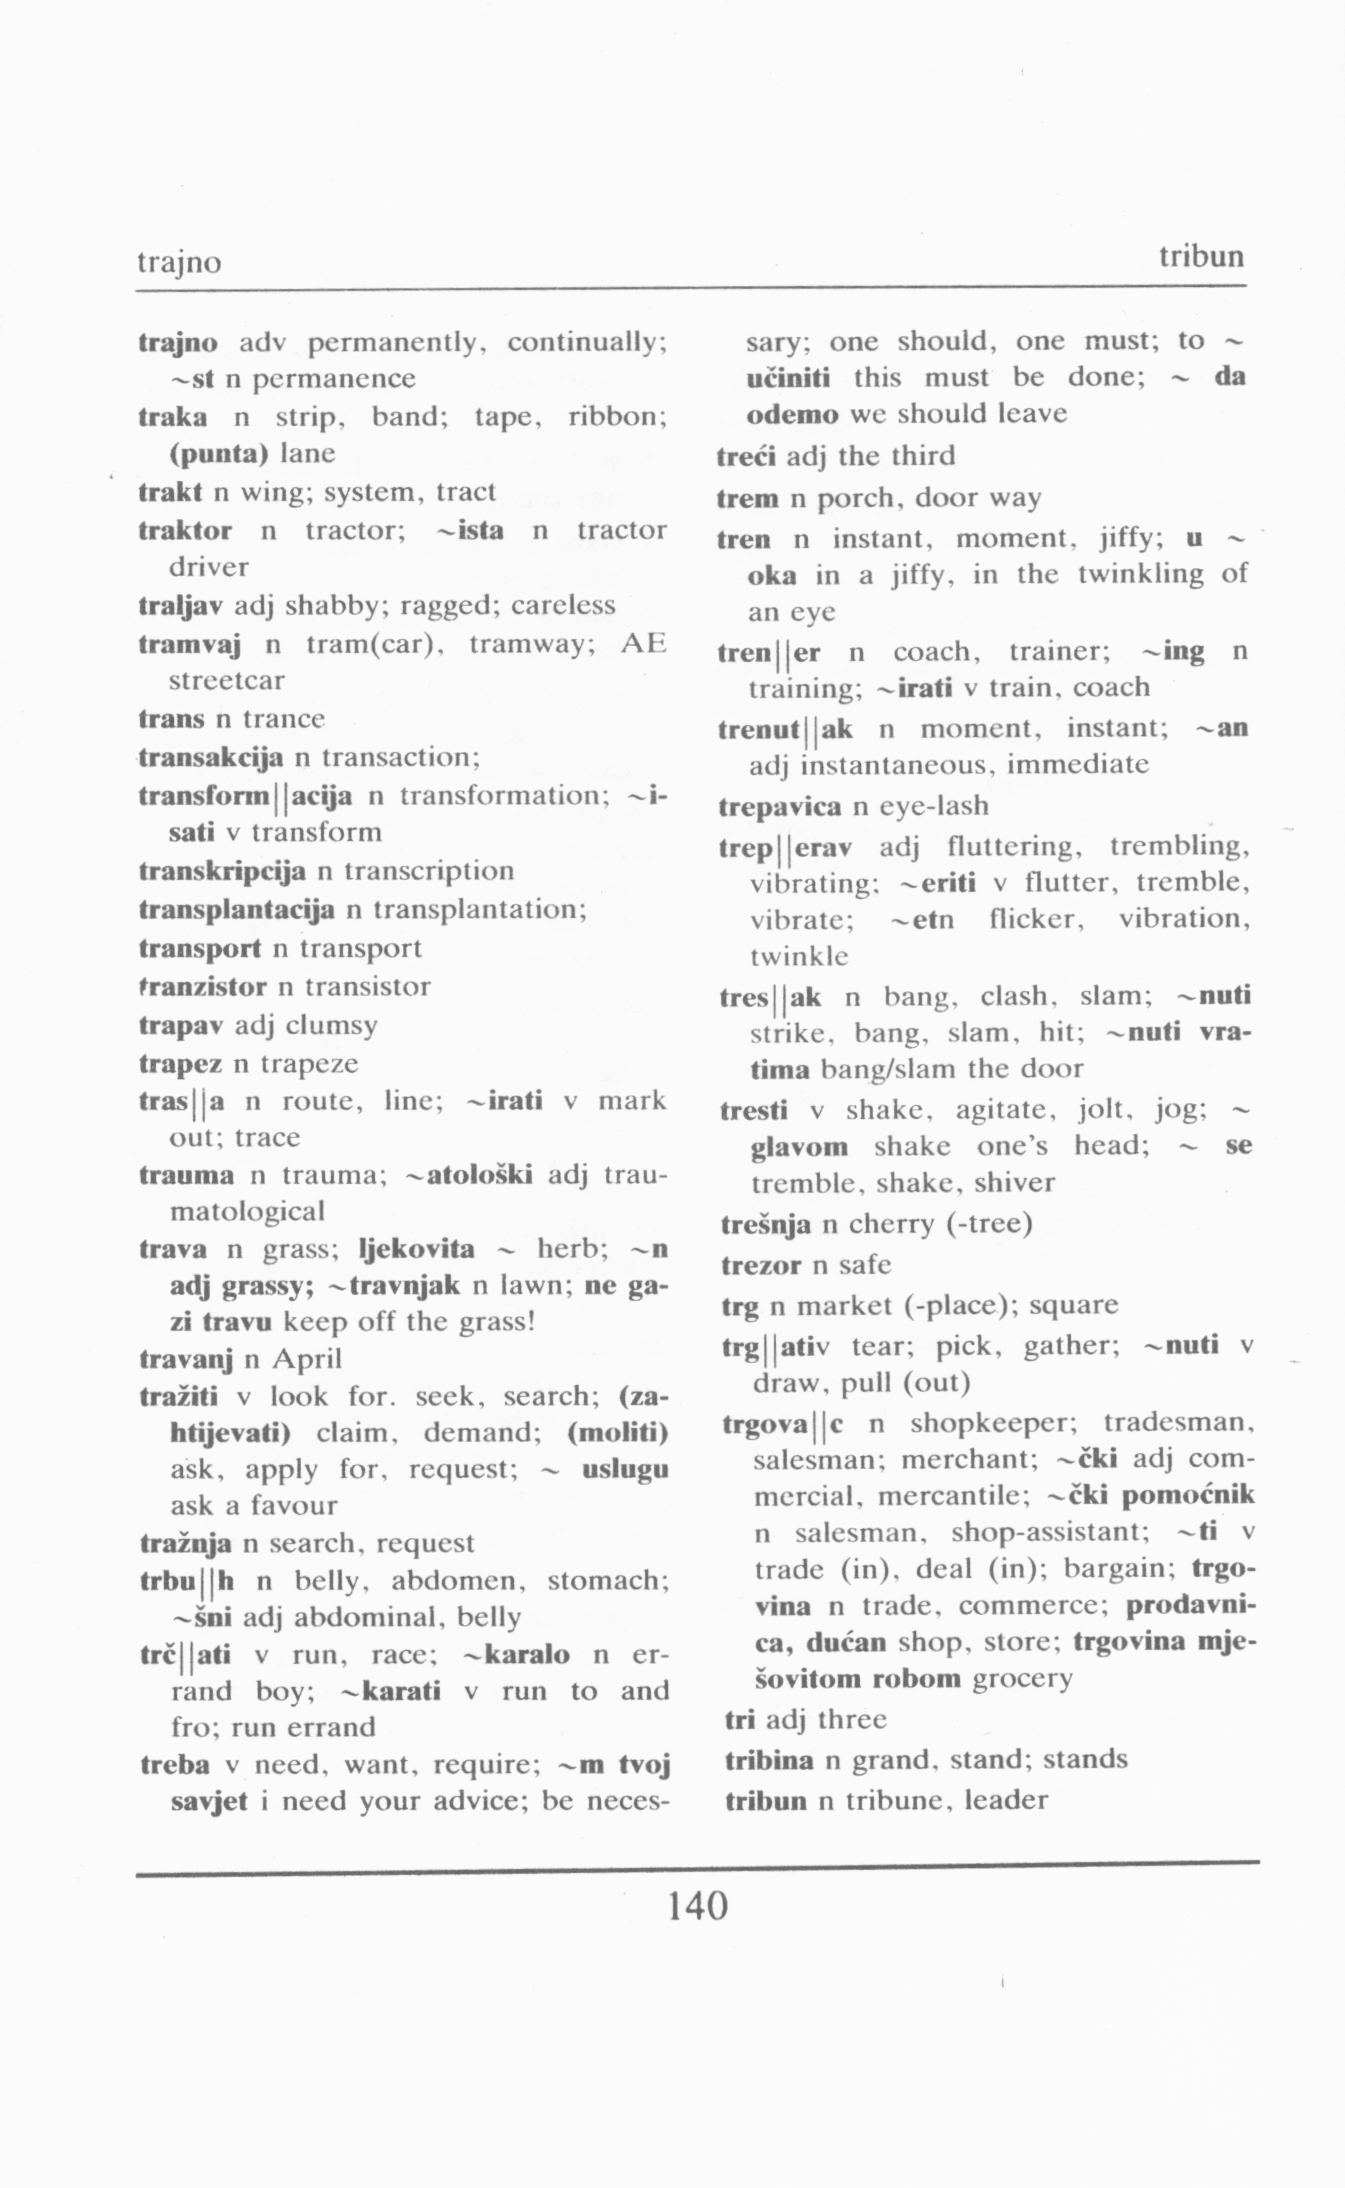 Serbian-English and English-Serbian Dictionary